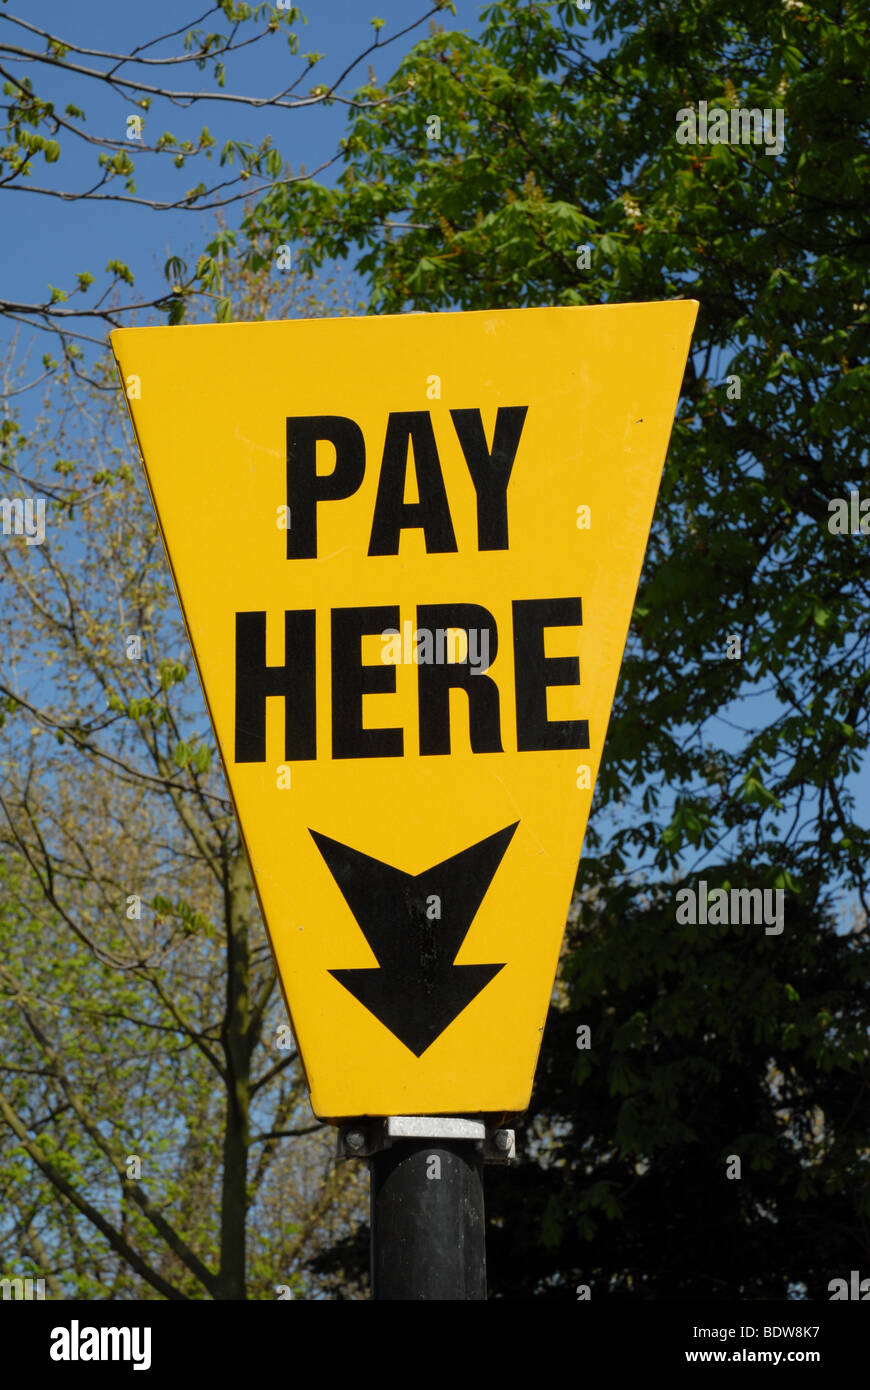 Un cartel amarillo con las palabras "Pagar aquí" y una flecha apuntando hacia abajo. Contra árboles y plantas verdes. Foto de stock